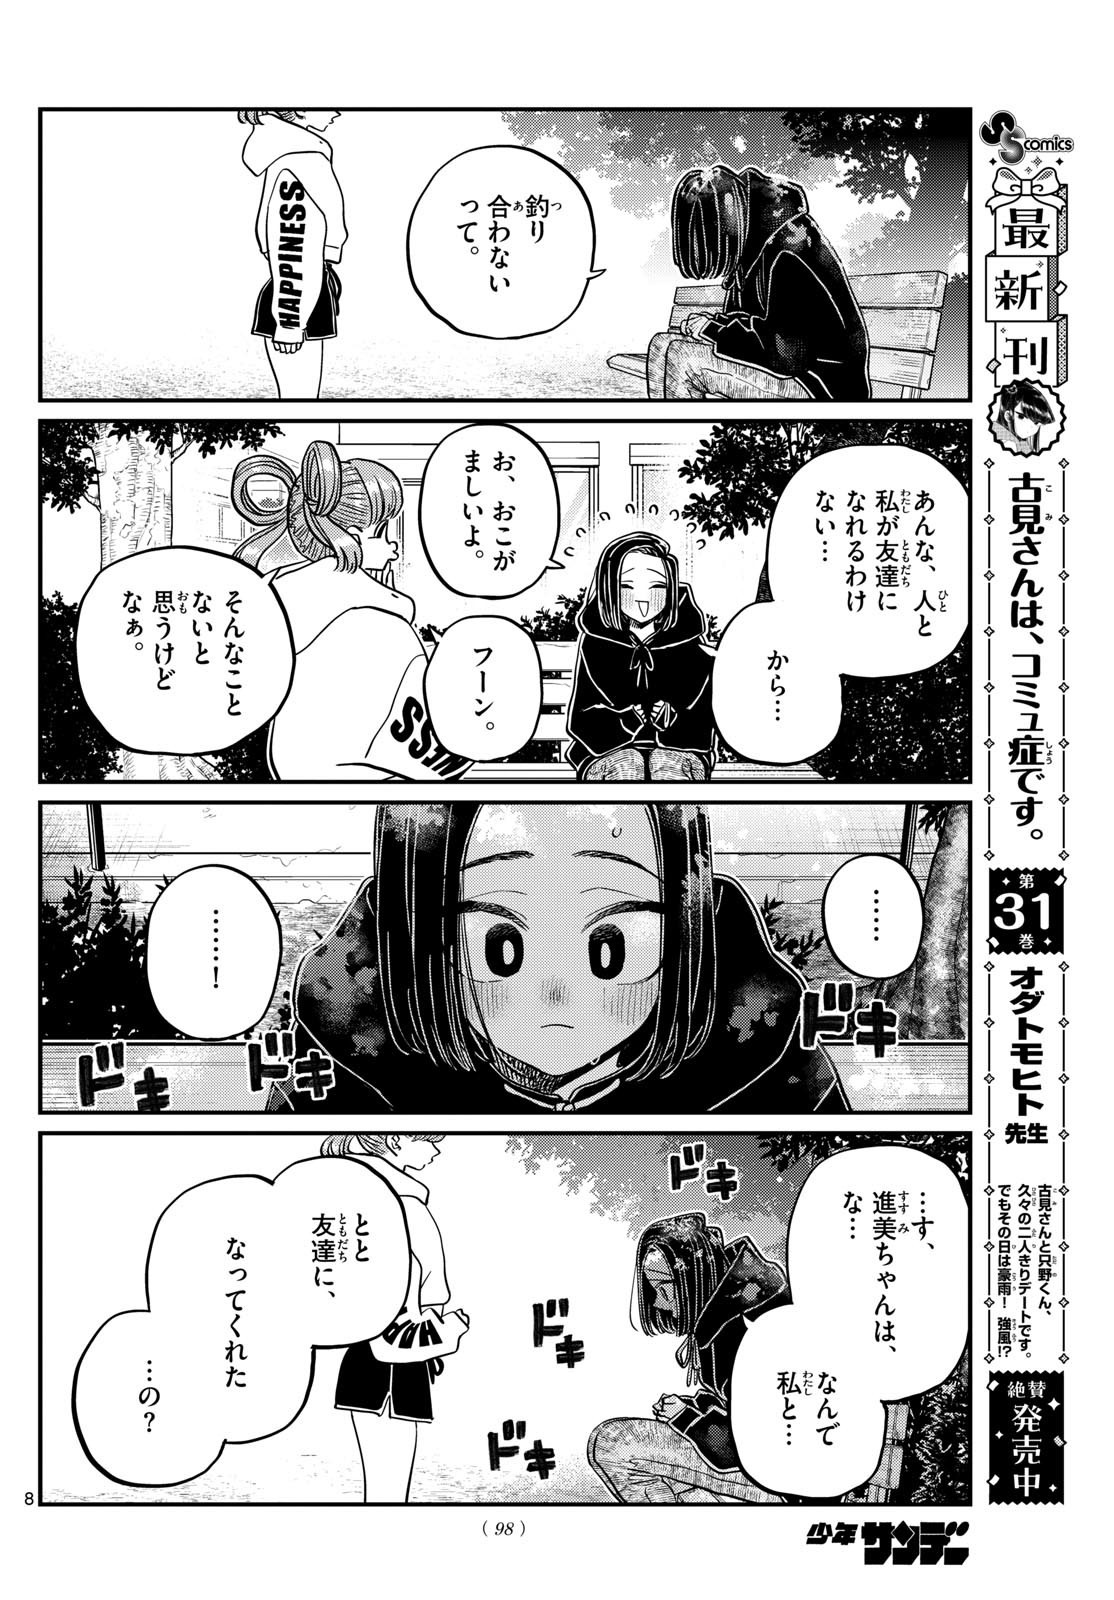 Komi-san wa Komyushou Desu - Chapter 436 - Page 8